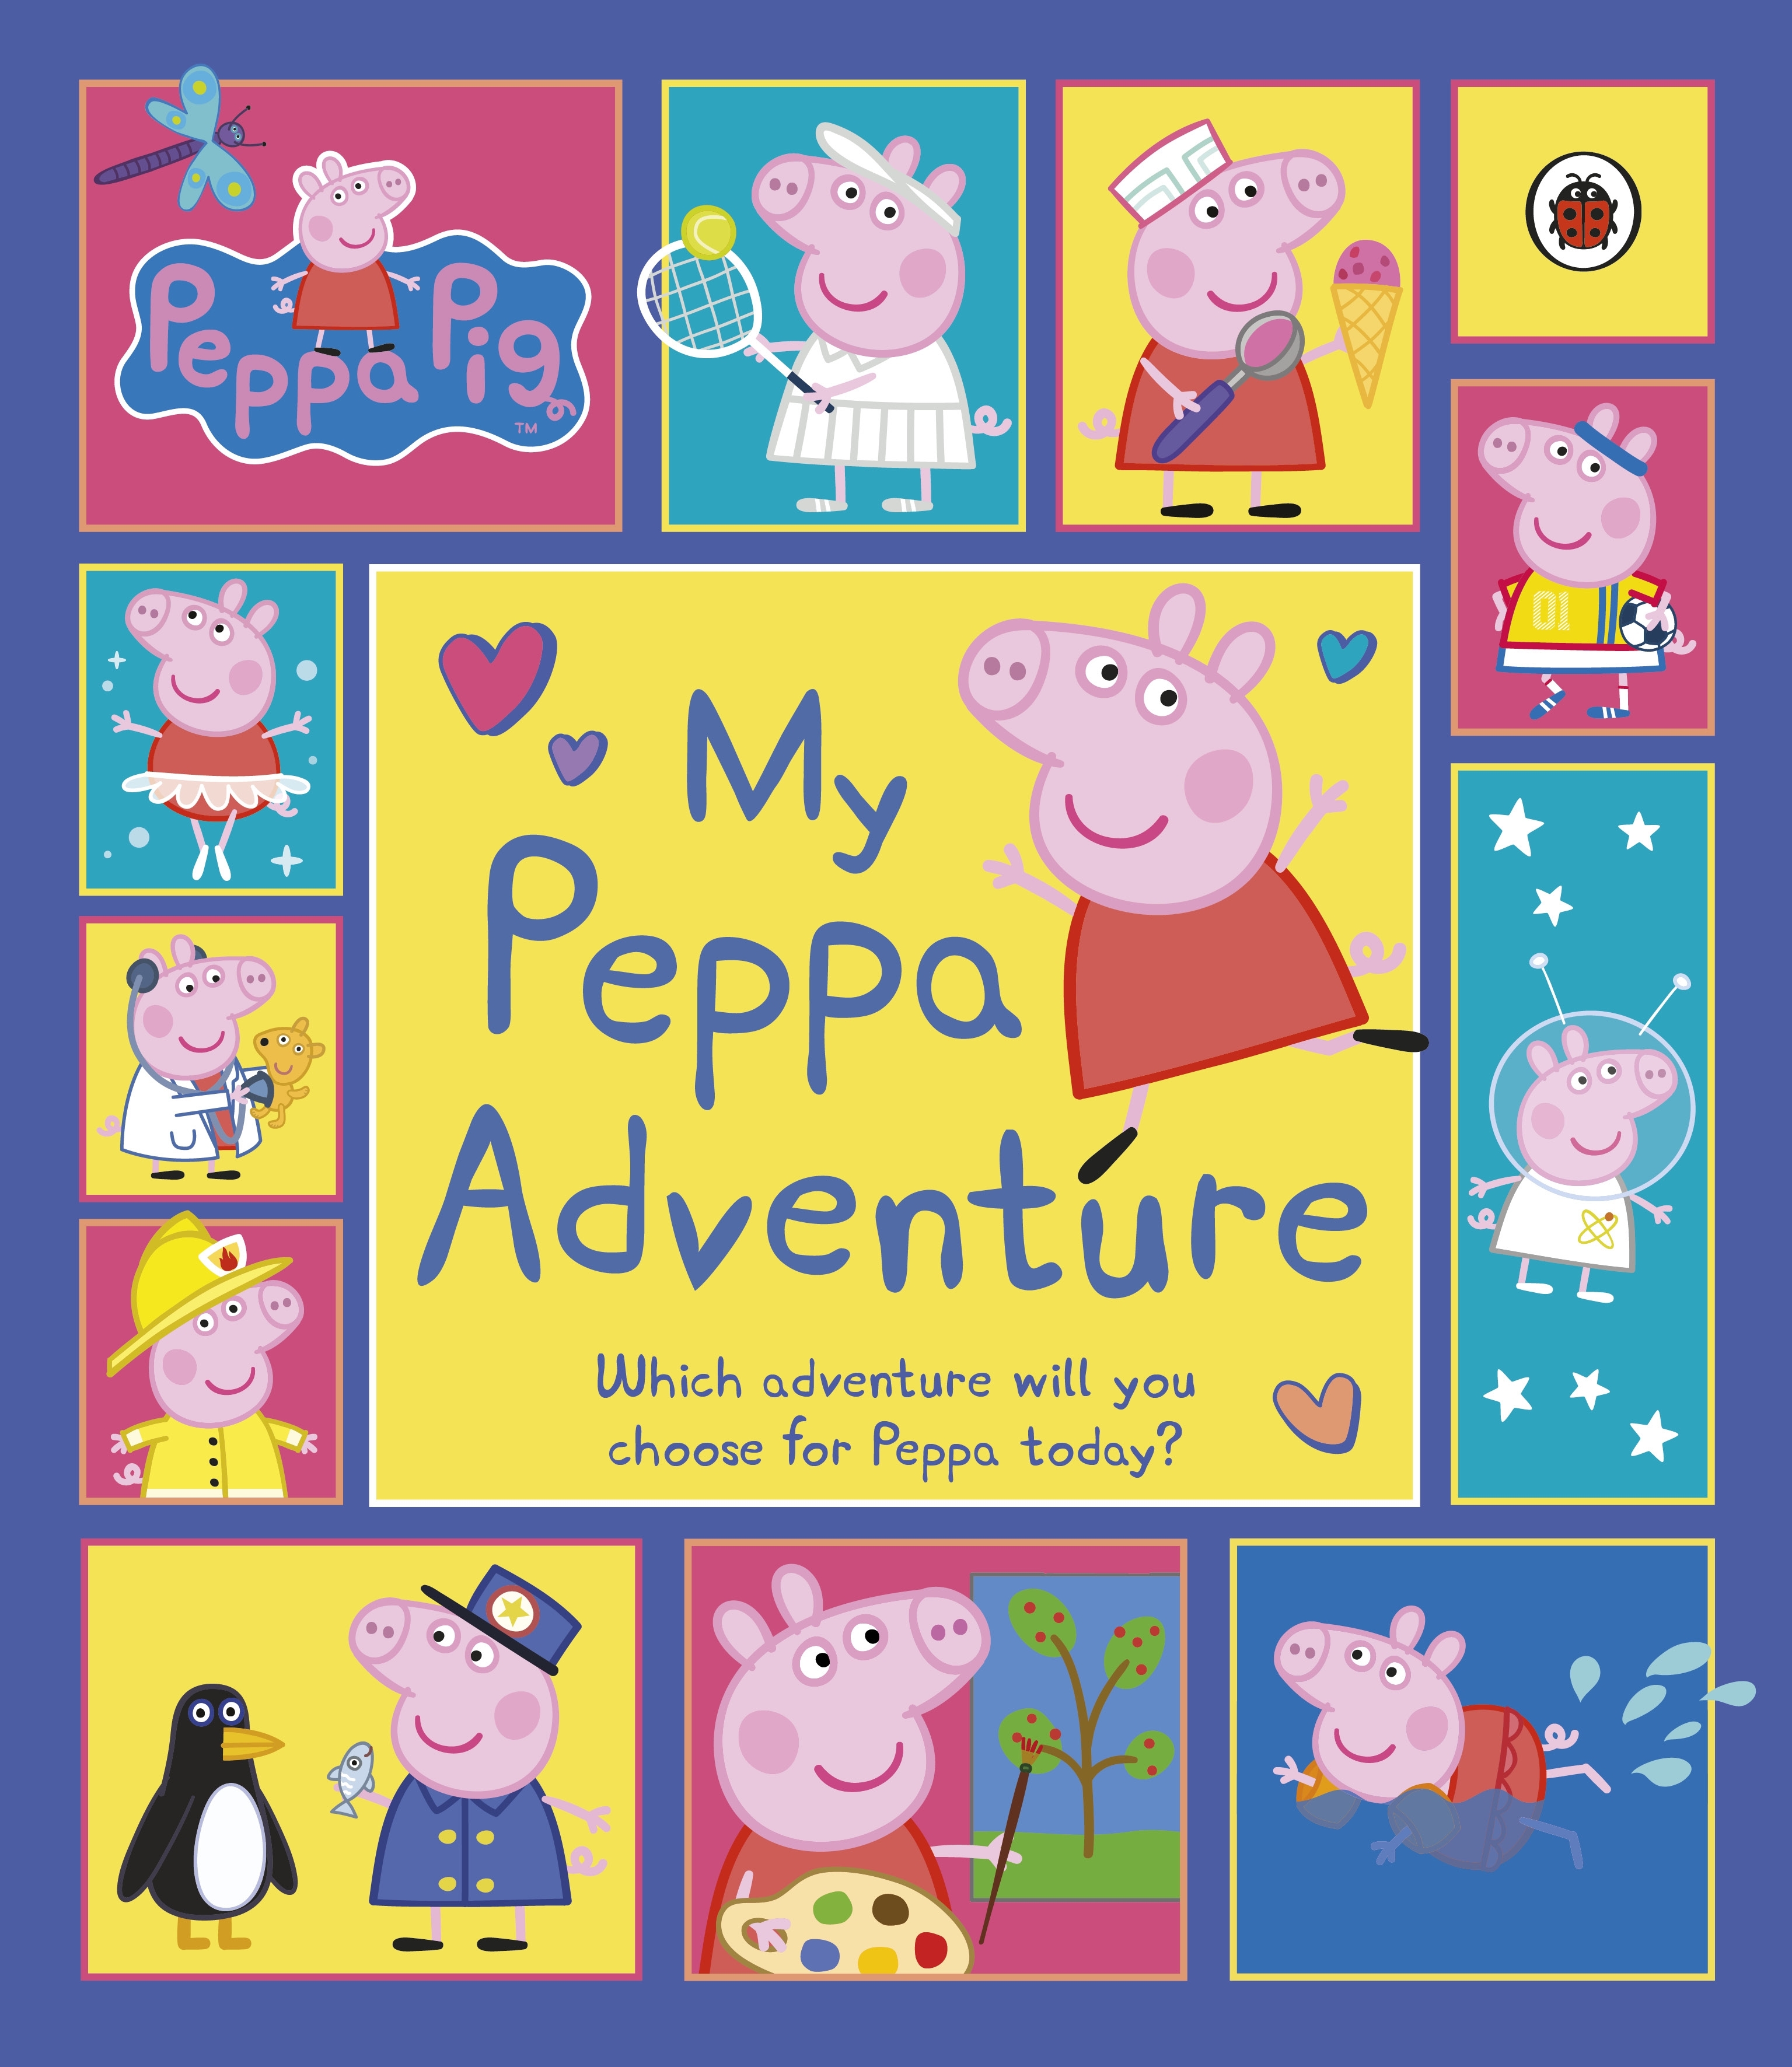 PEPPA PIG: MY PEPPA ADVENTURE PICTURE BOOK